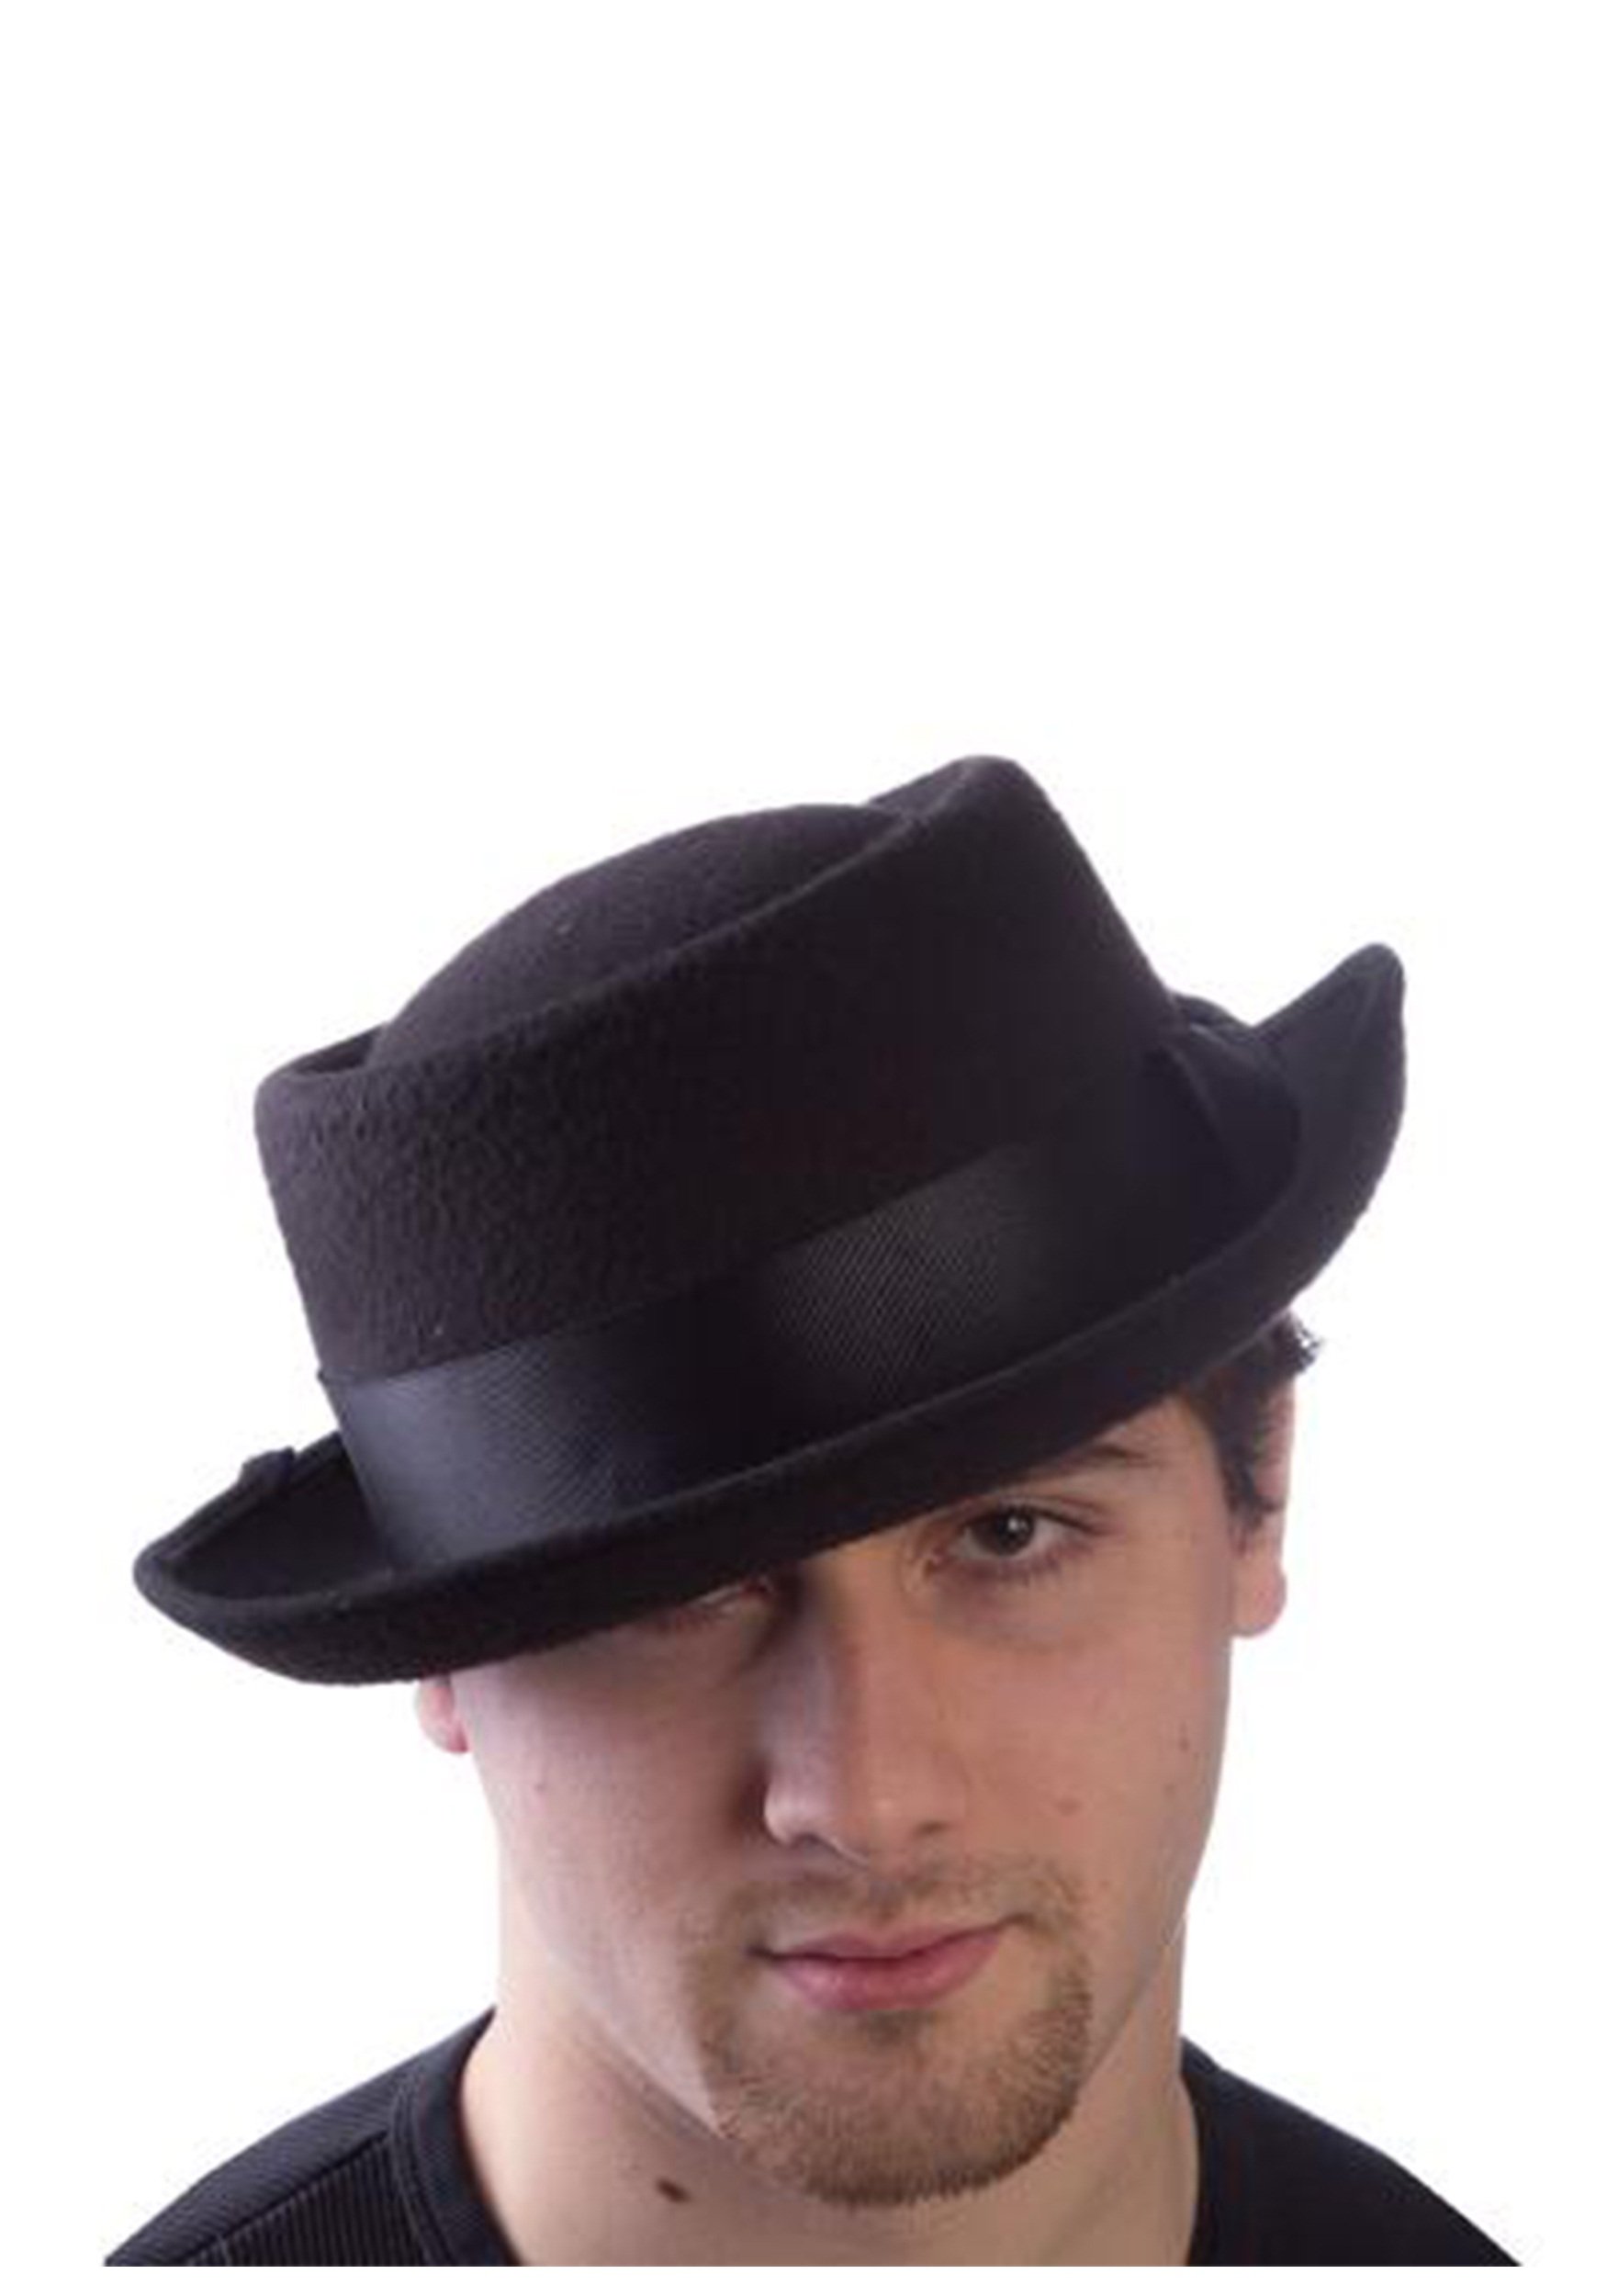 Мужская шляпа сканворд 7. Шляпа порк Пай. Pork pie шляпа мужская. Мужская черная шляпа порк-Пай. Шляпа мужская Amundson.